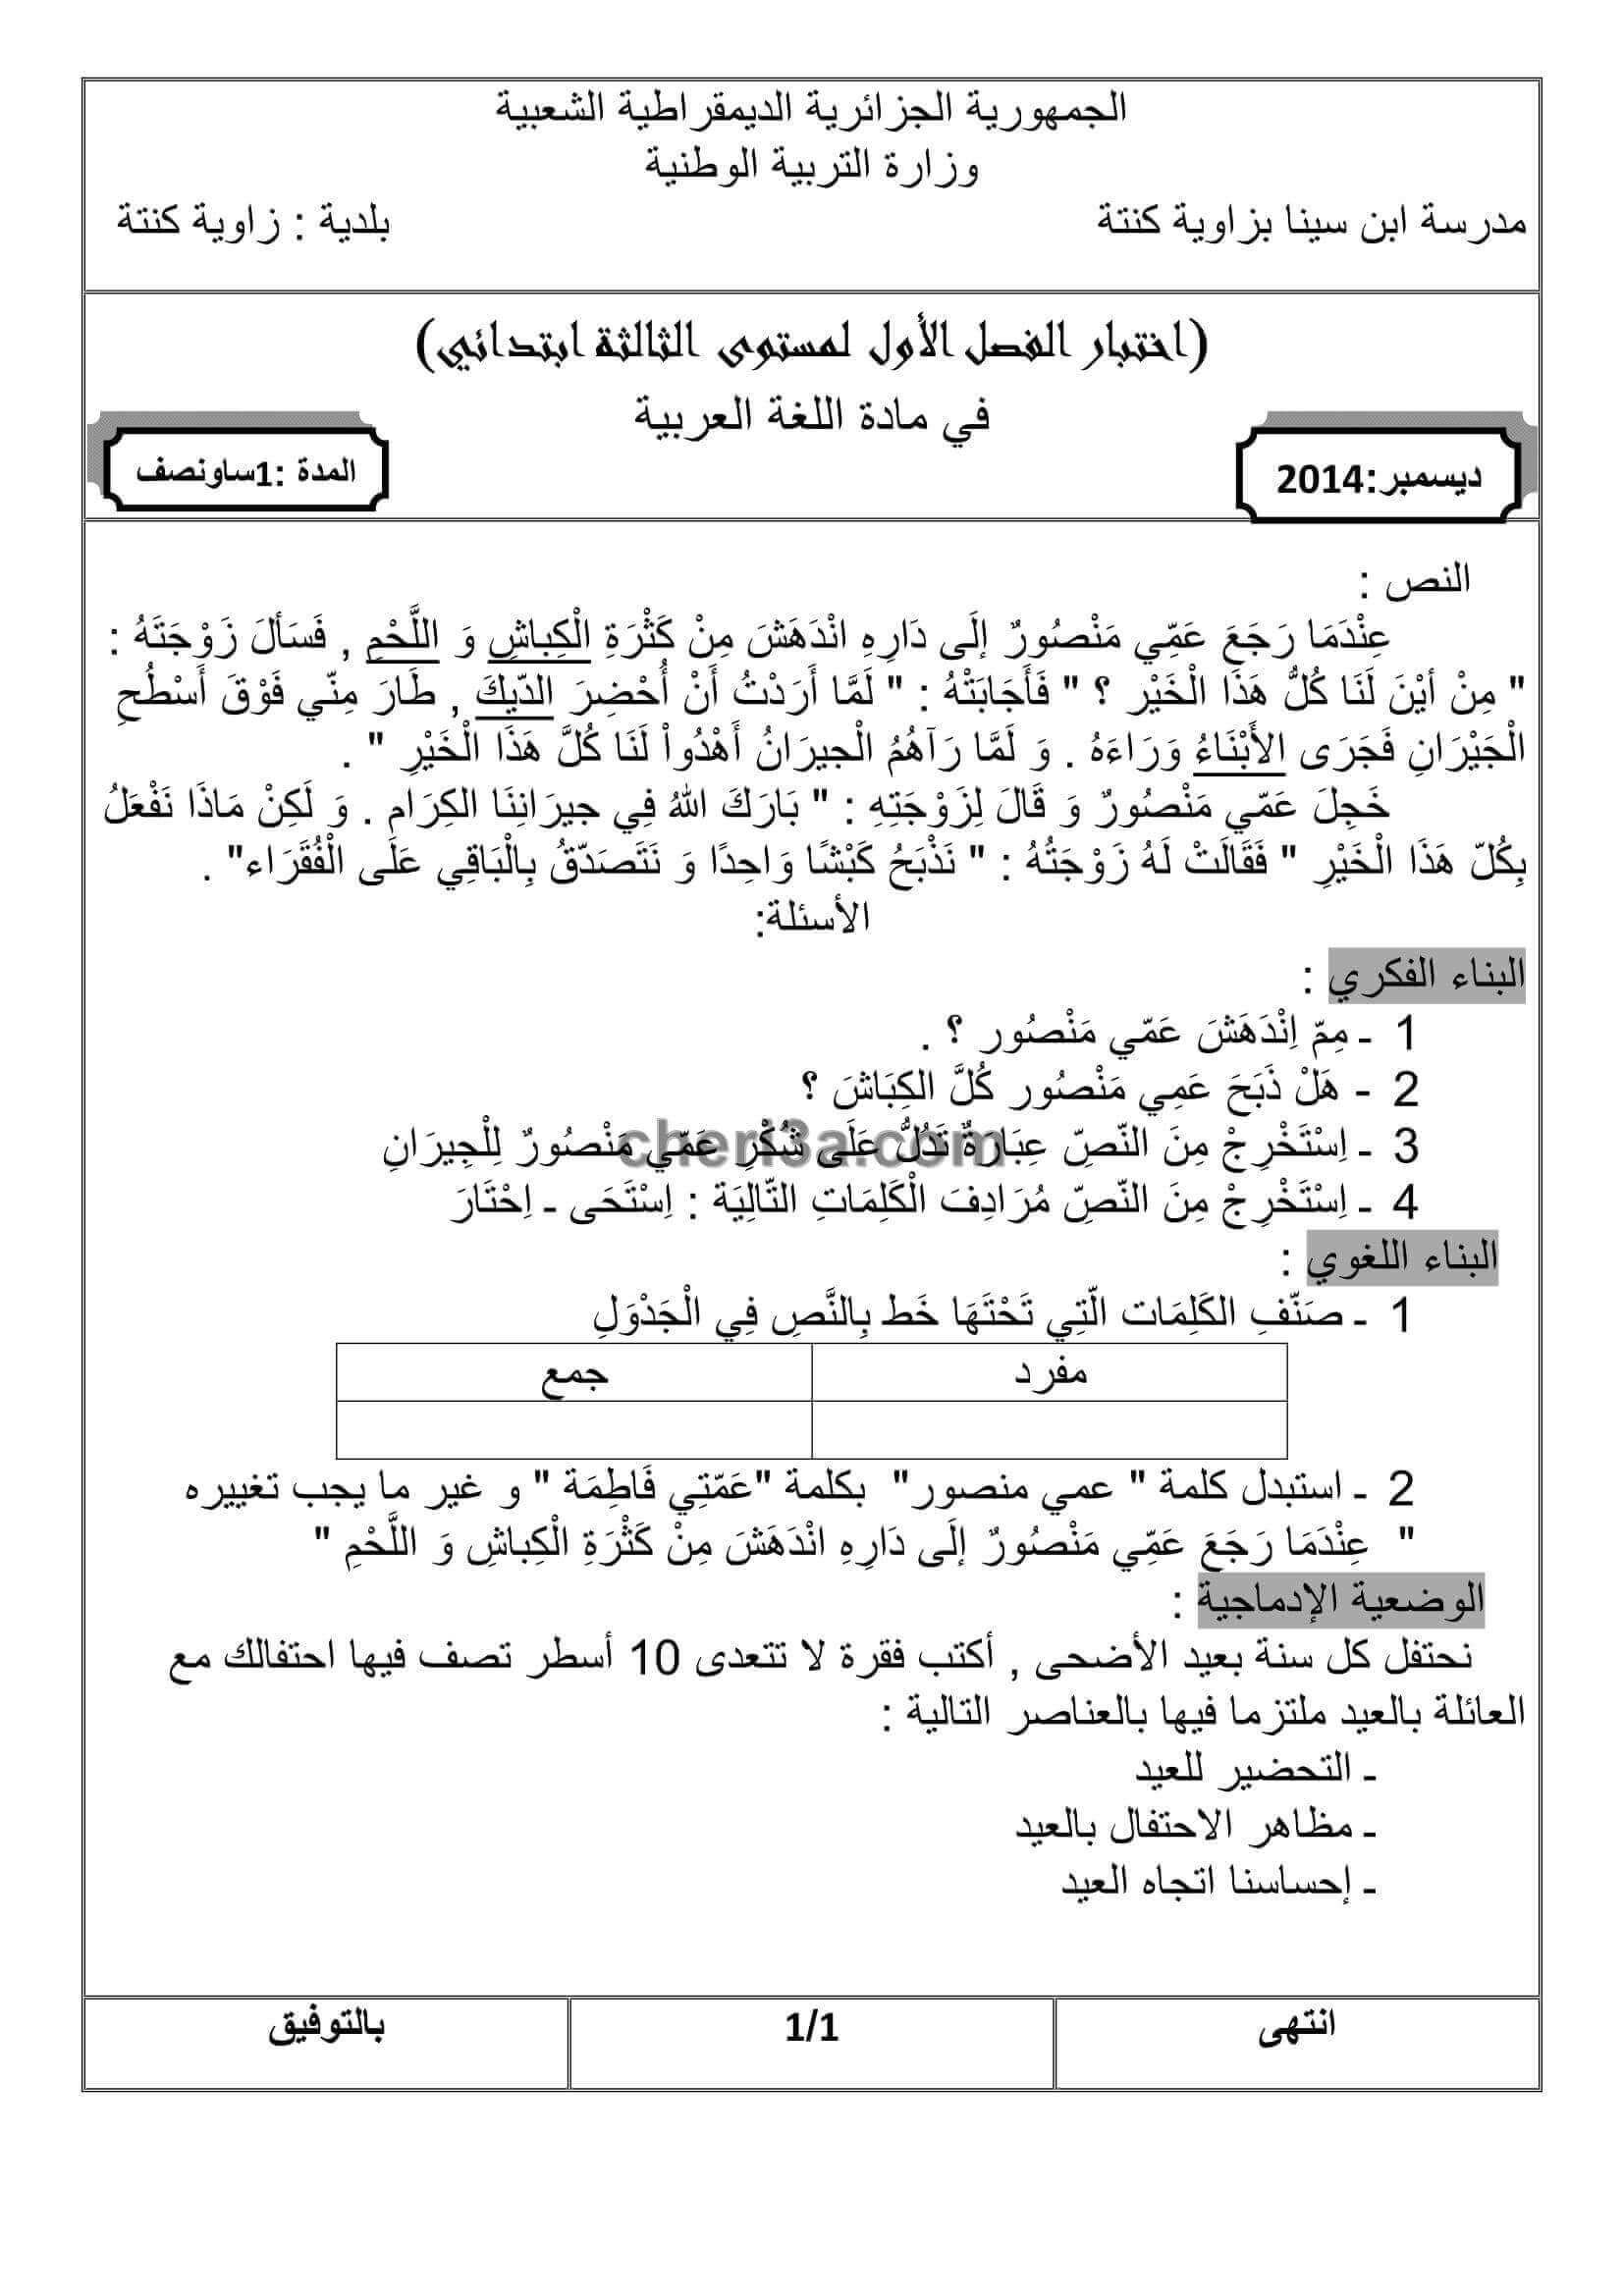 اختبار الفصل الاول للسنة الثالثة ابتدائي في مادة اللغة العربية النموذج 9